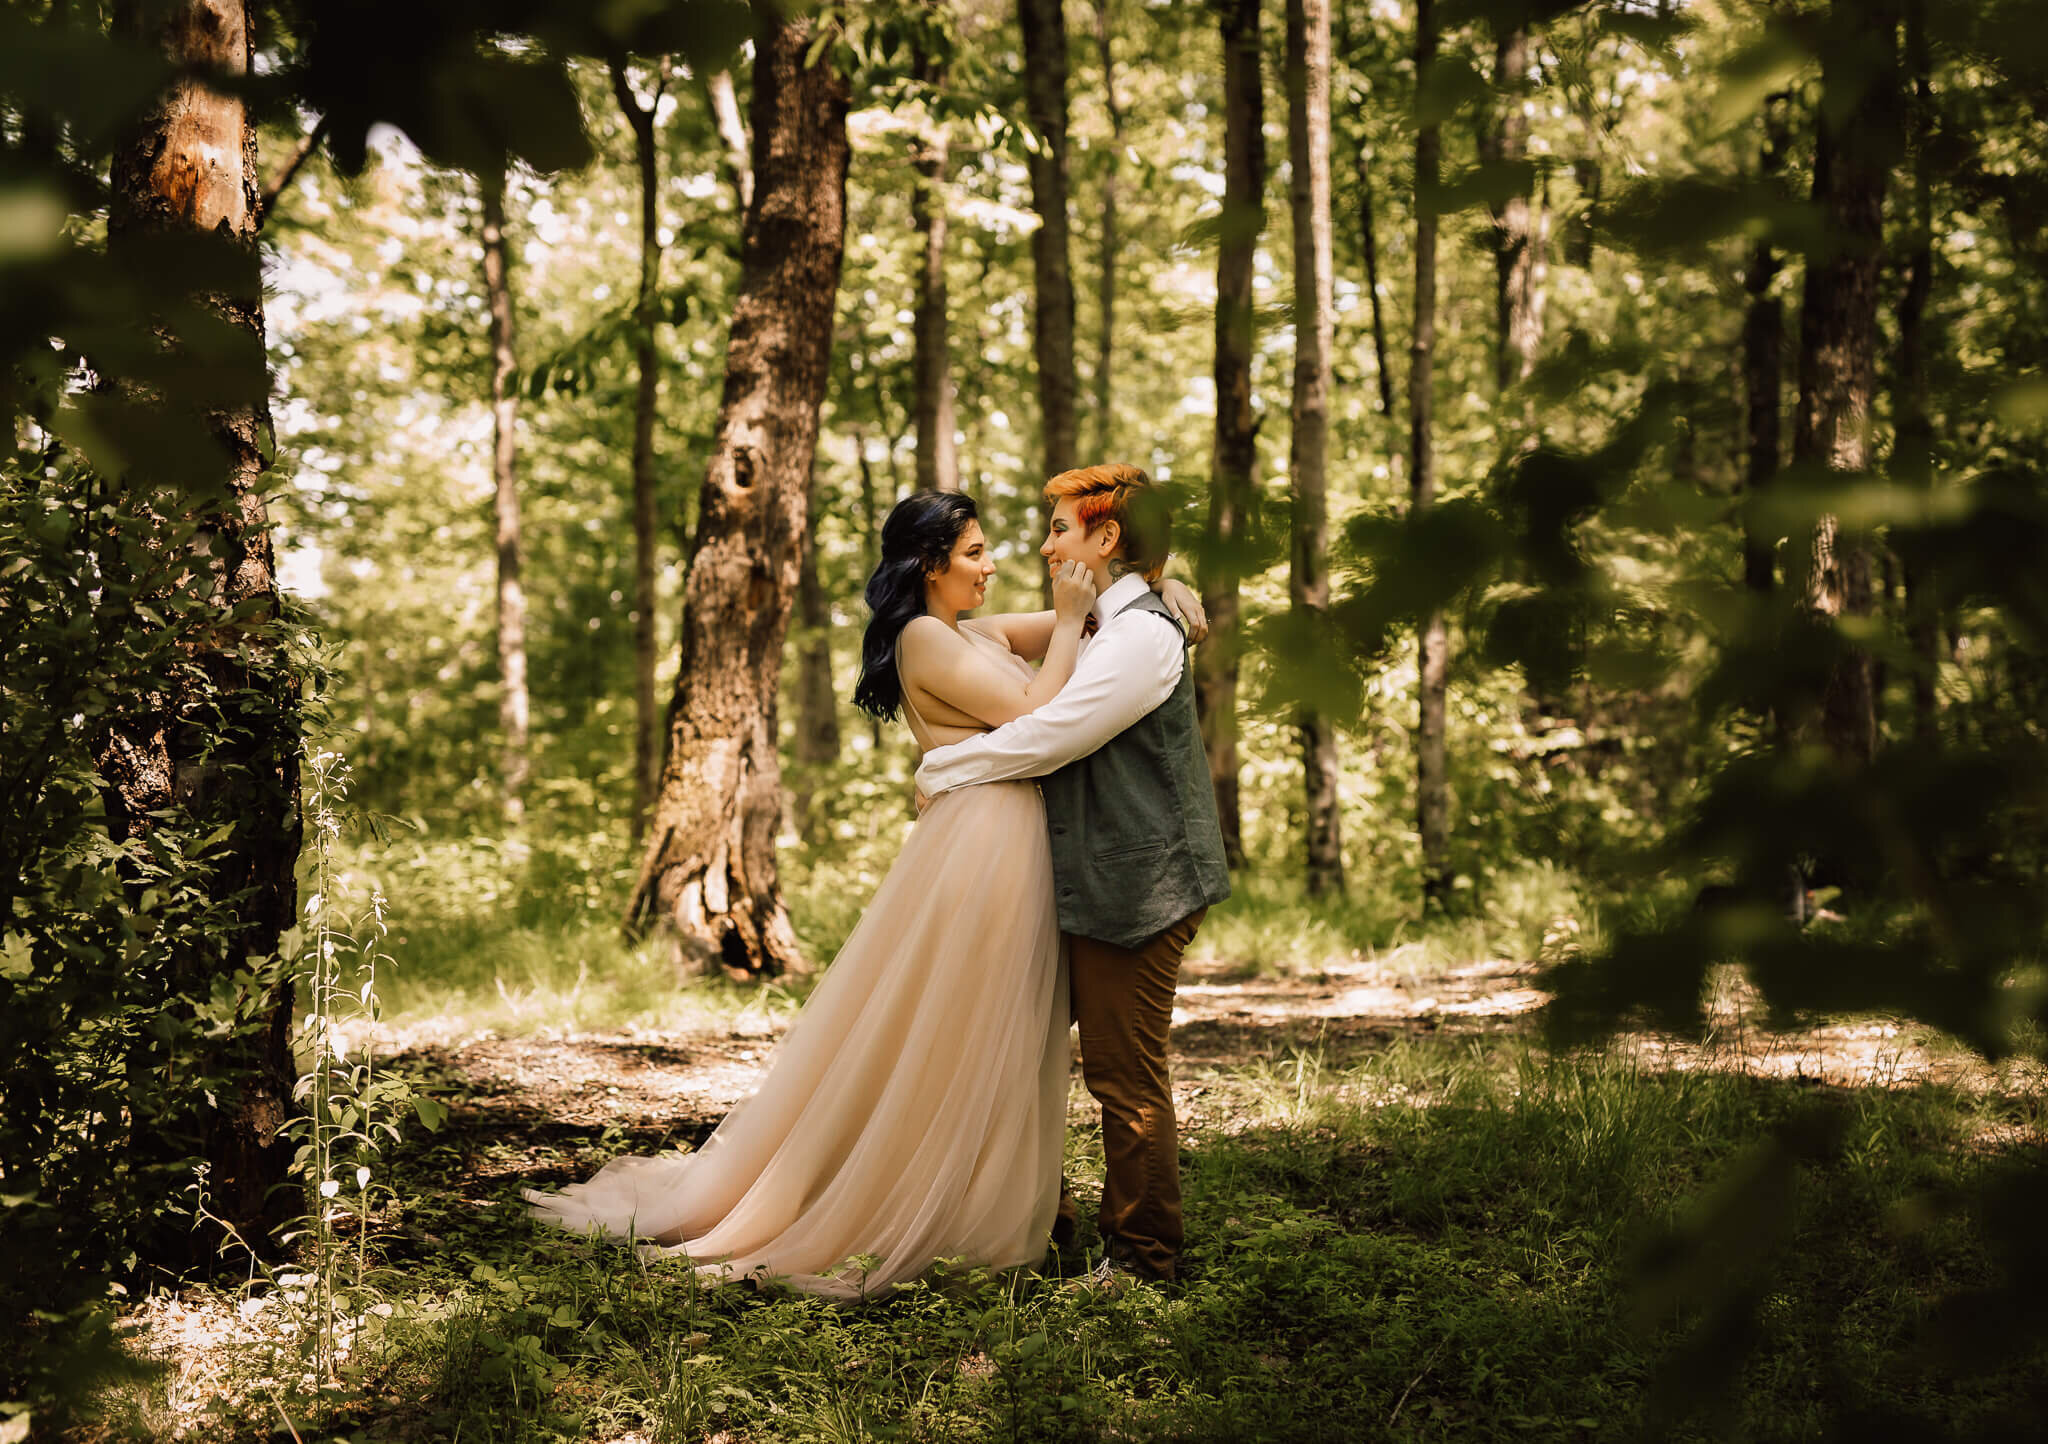 brides-adventure-forest-elopement-kentucky.jpg